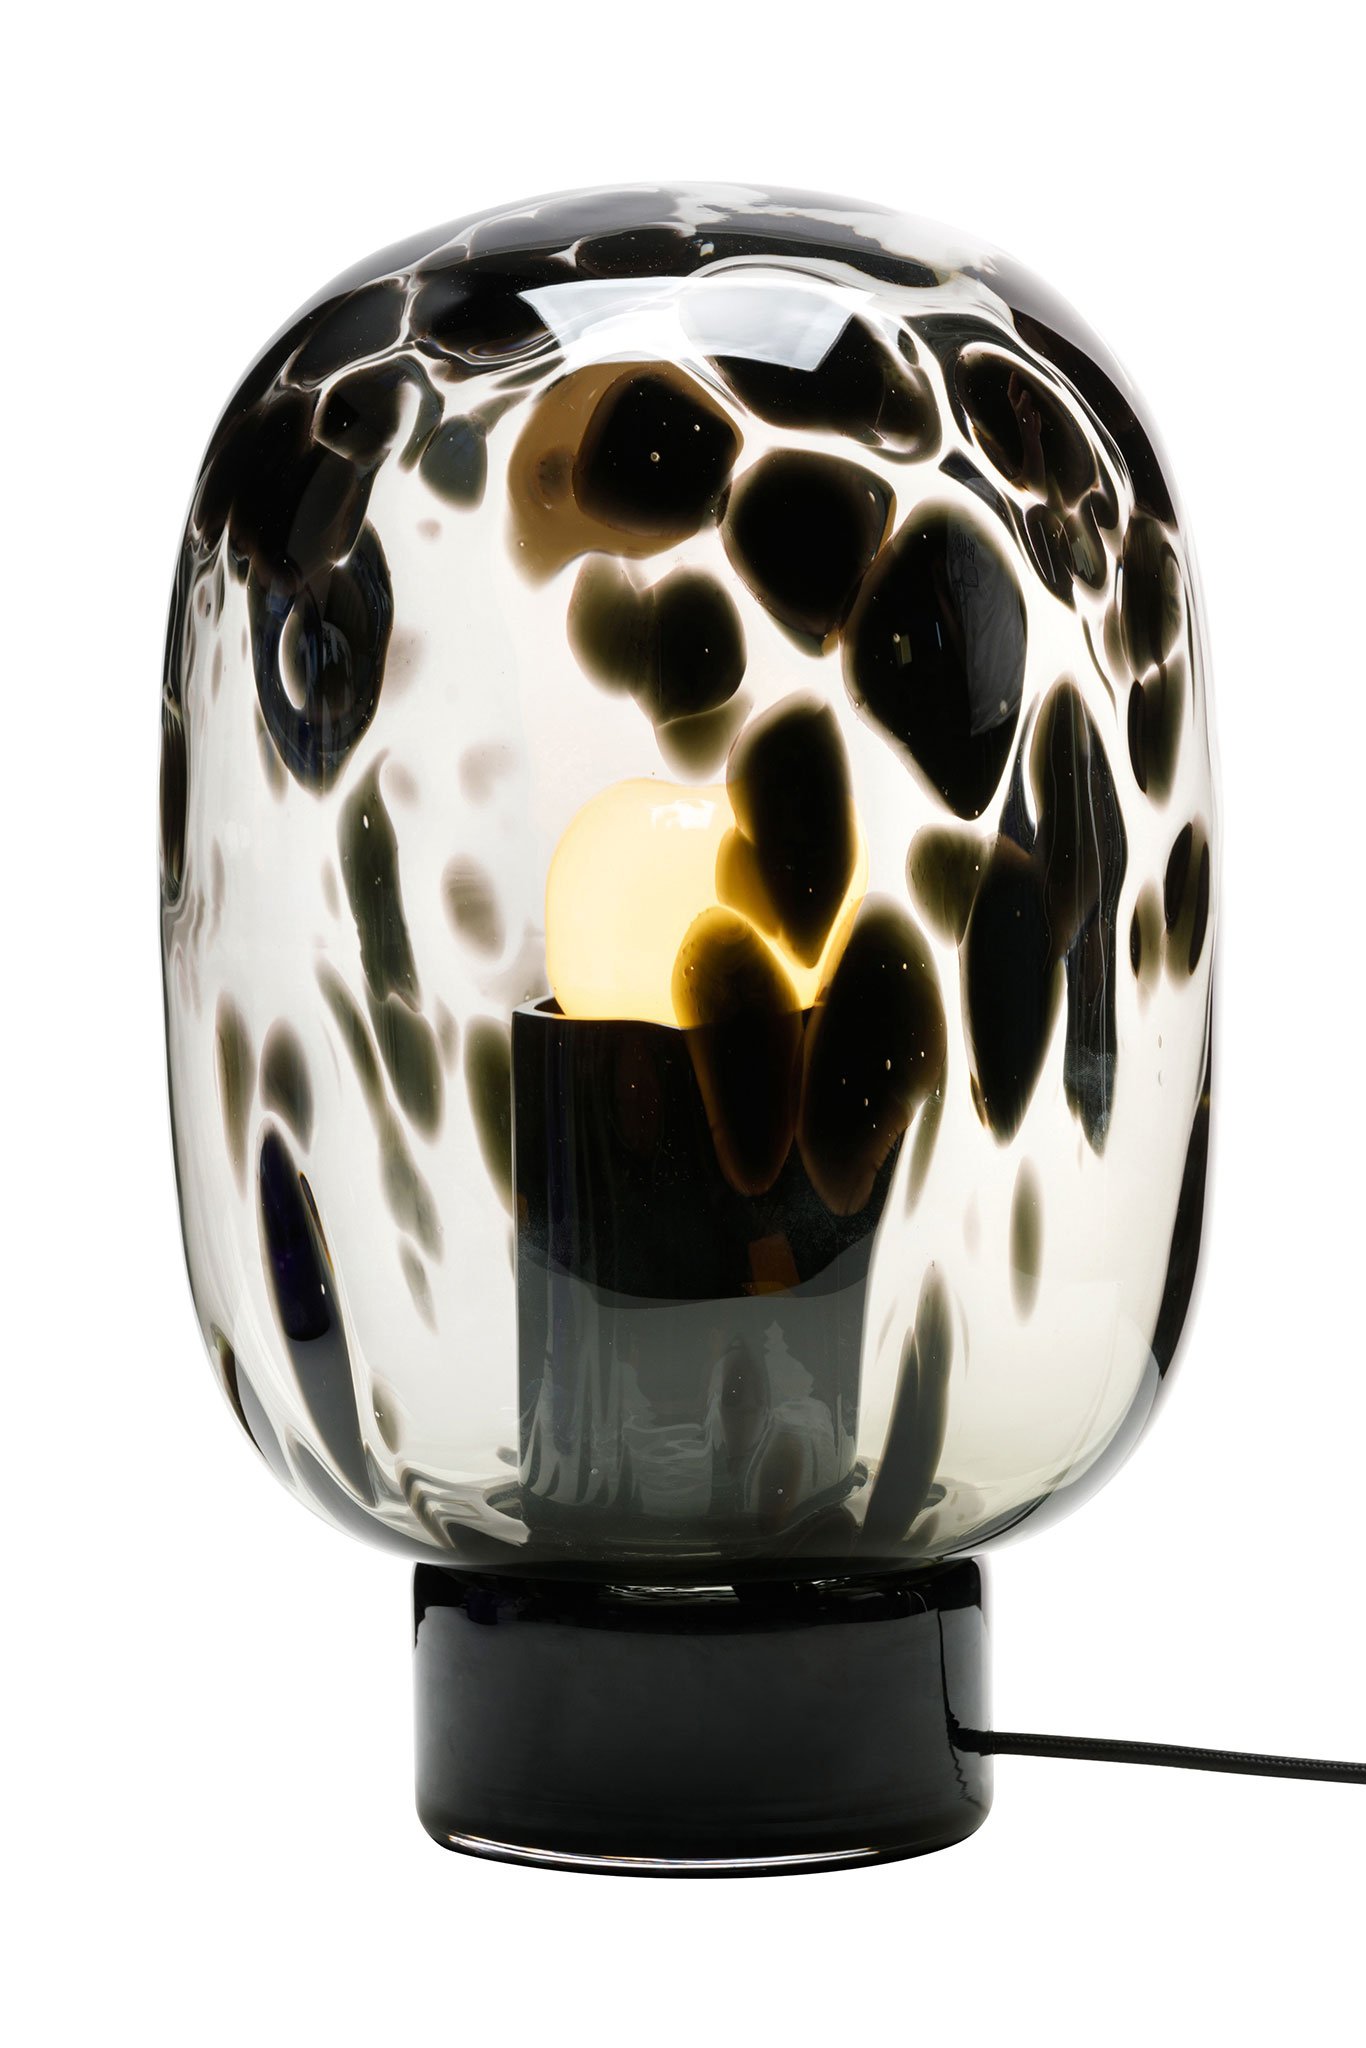 Mundgeblasenes Glas, modern interpretiert: die Lampe »Flakes« für das deutsche Label Favius – vorgestellt auf der IMM Cologne 2020. favius.de